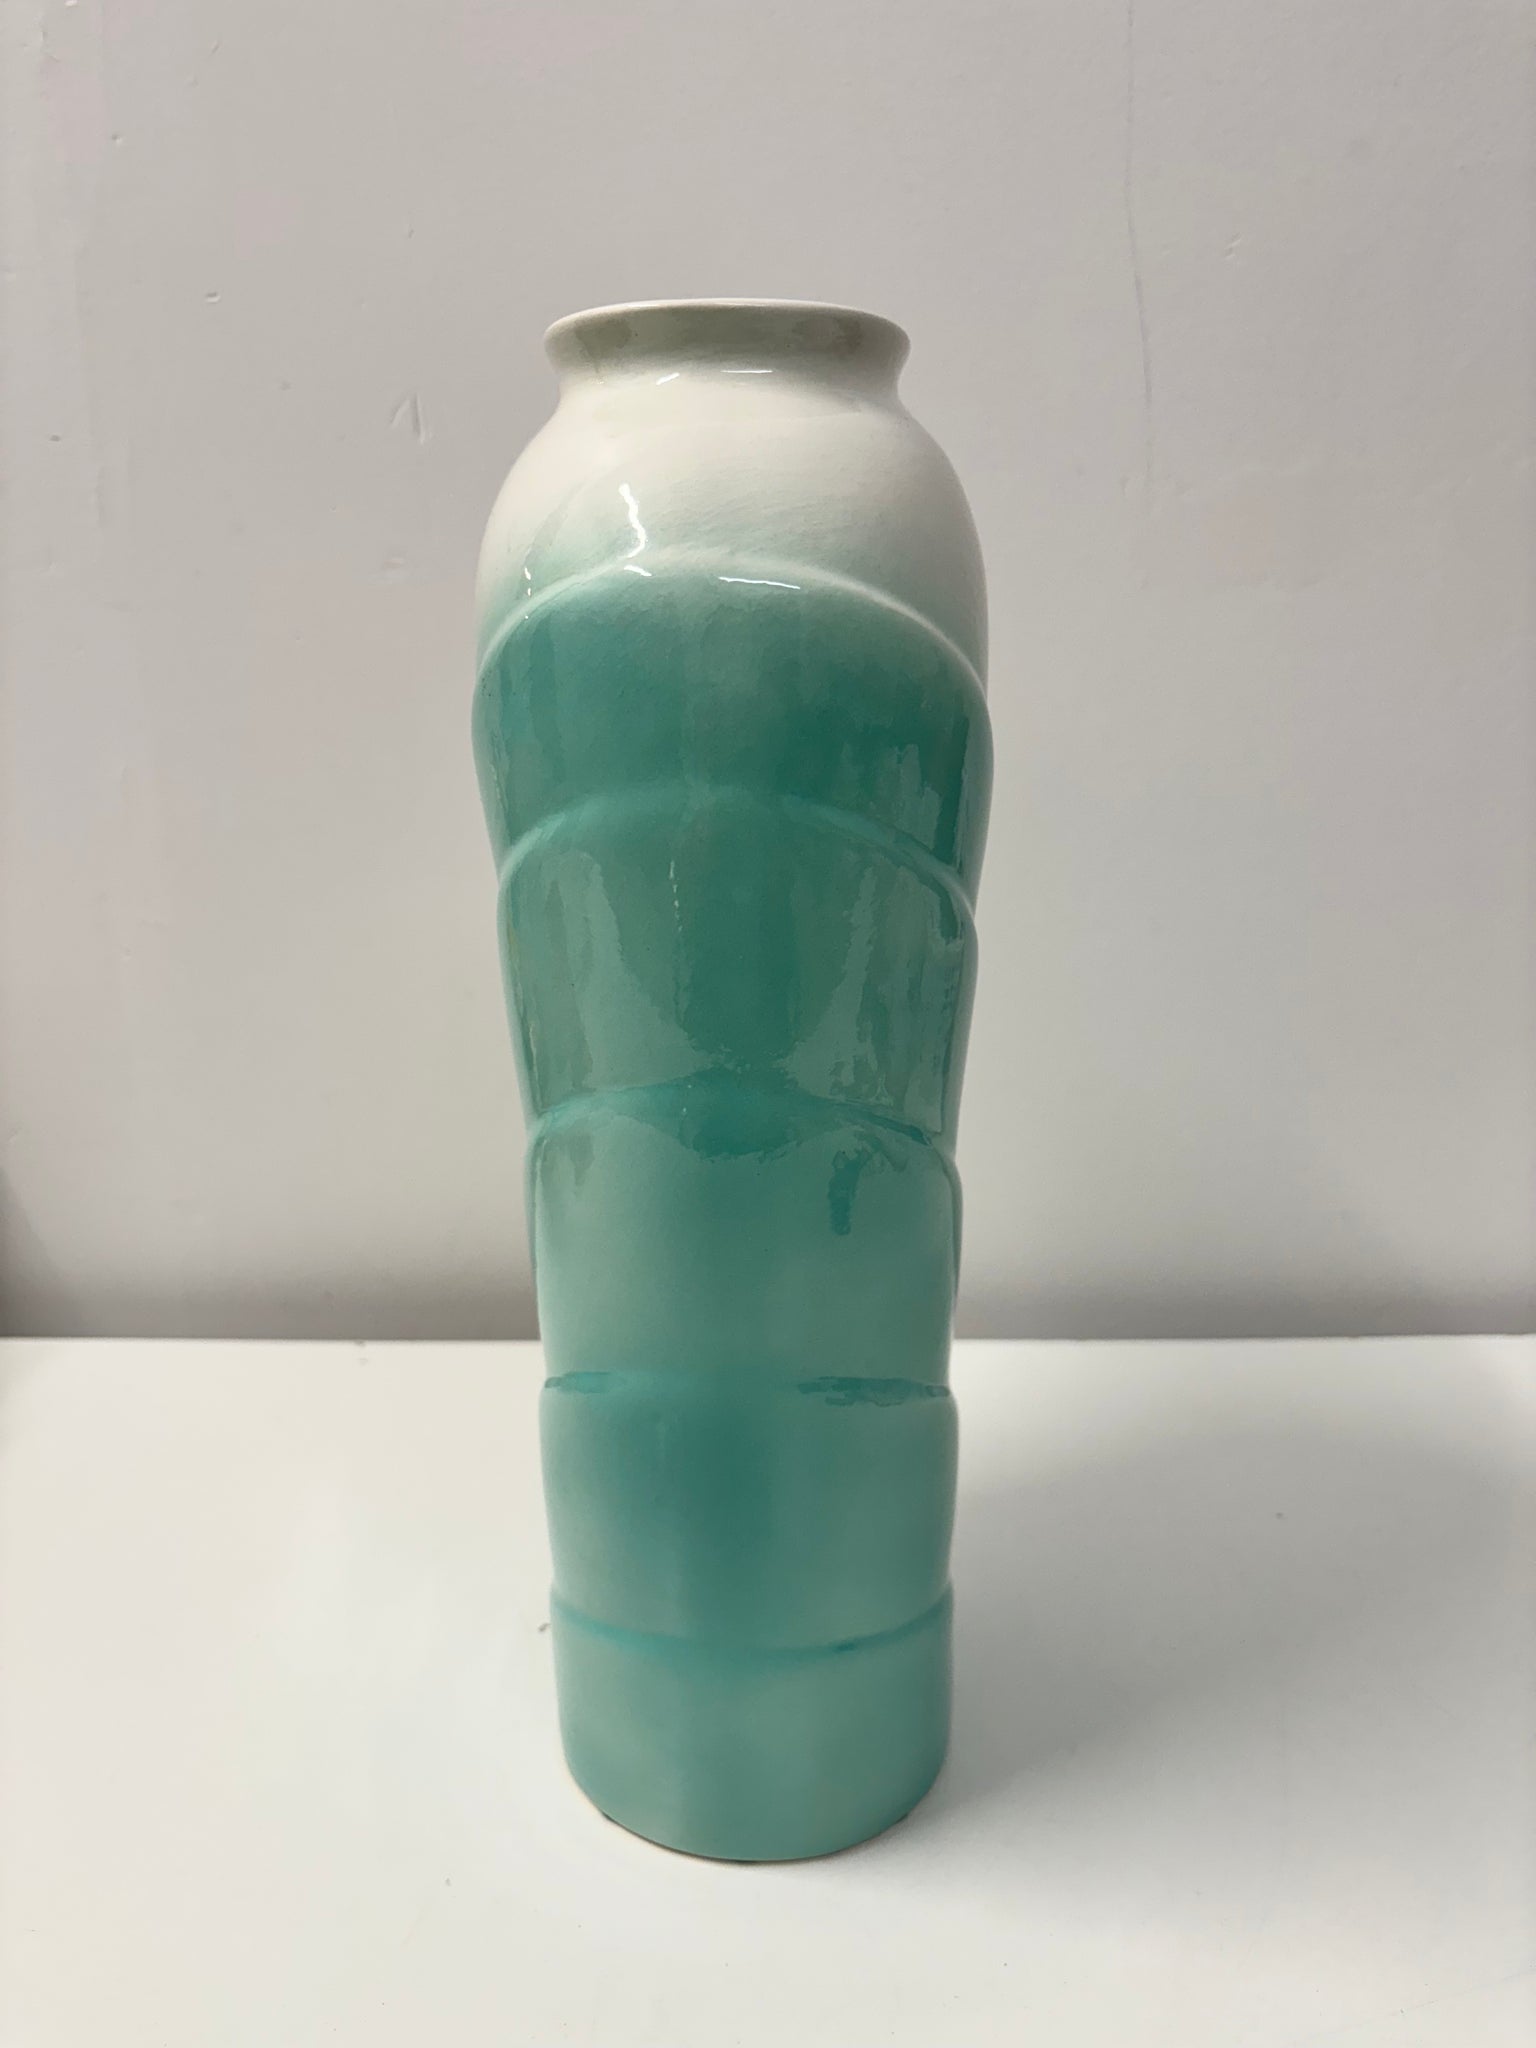 Grand vase art deco en céramique turquoise et blanc